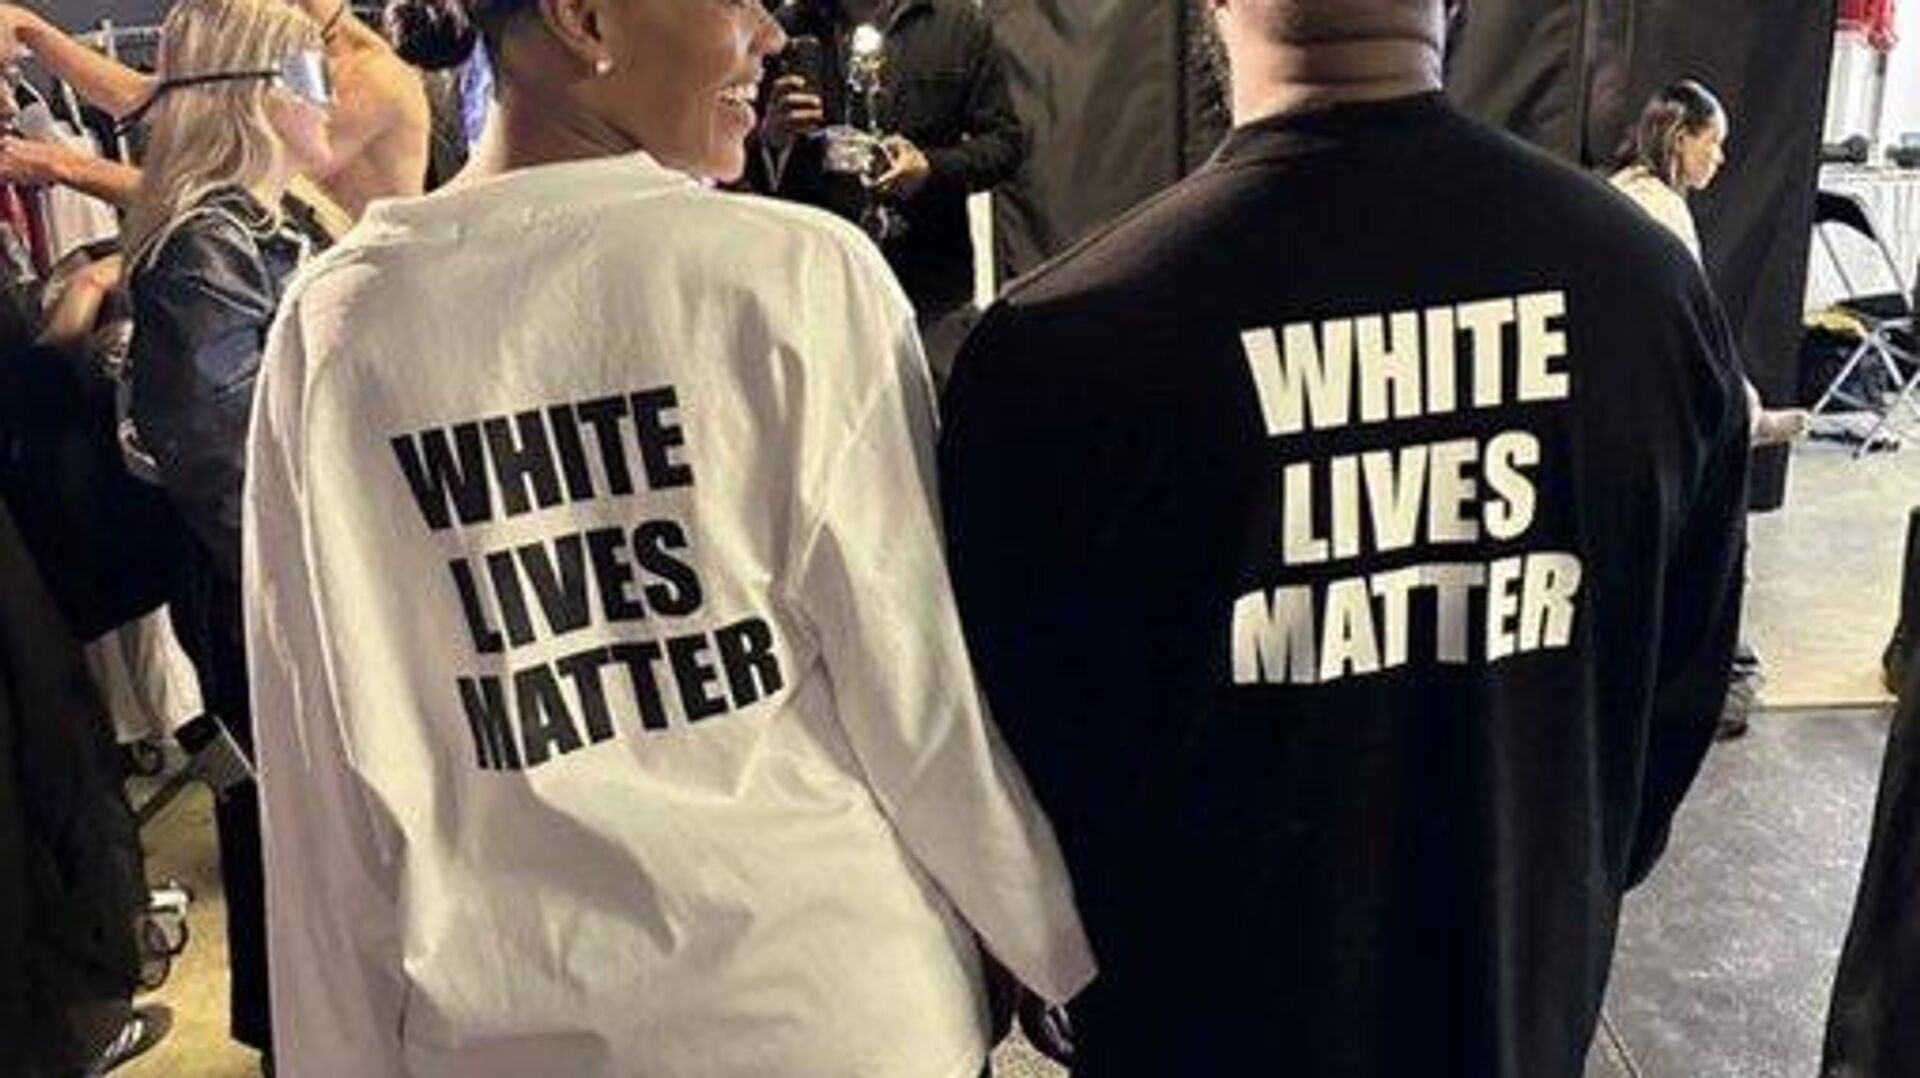 White lives matter